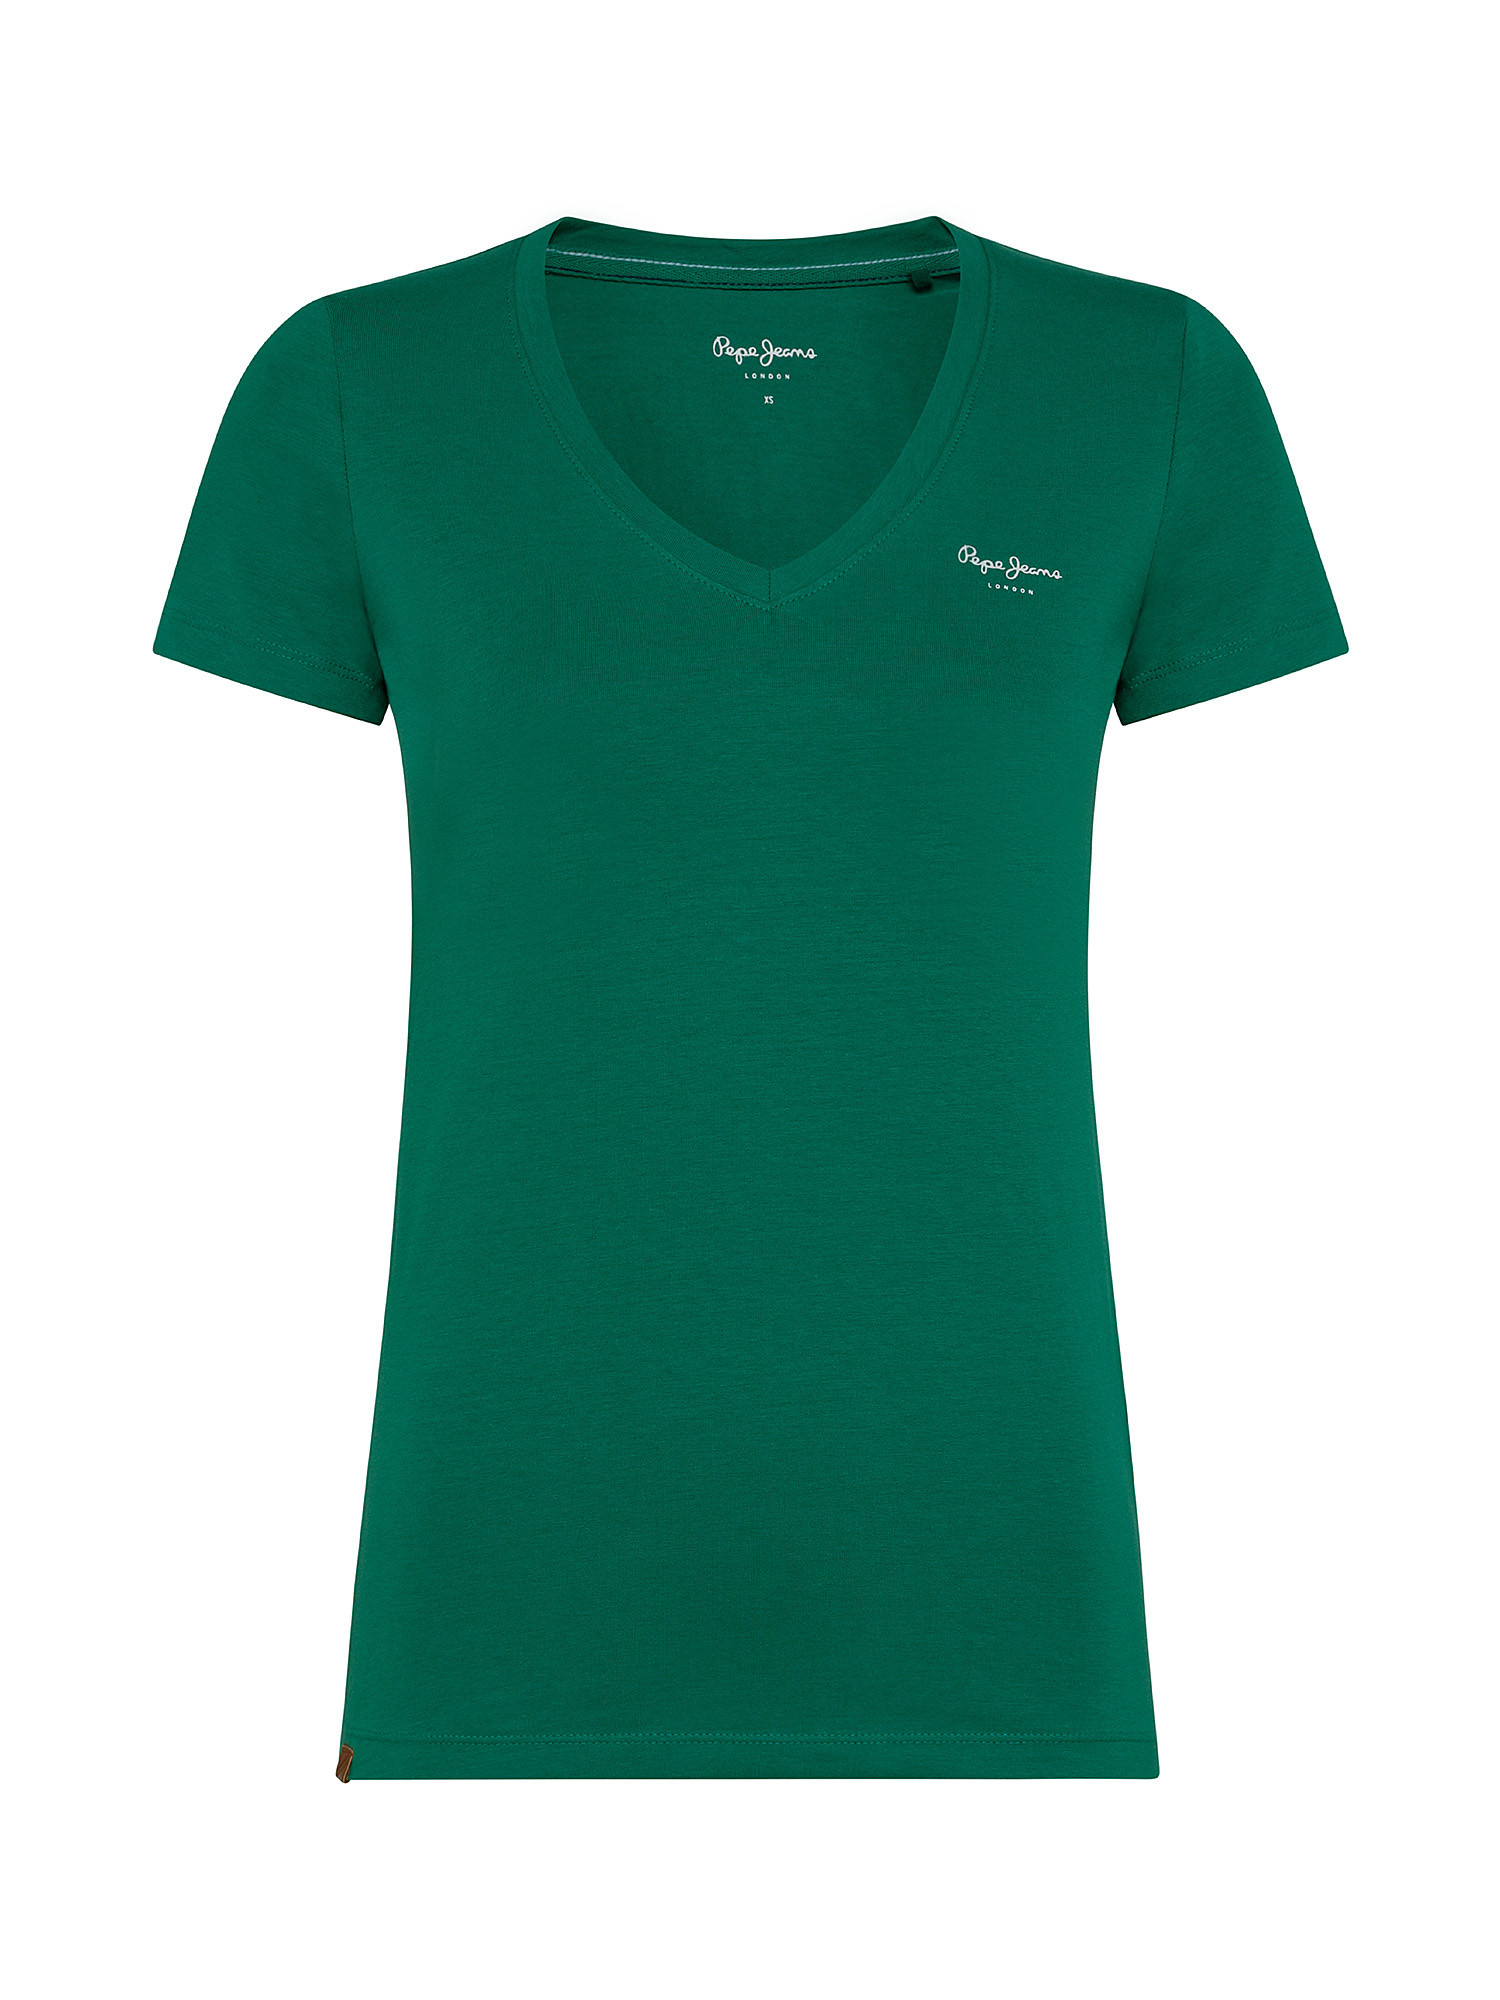 Violette cotton T-shirt, Green, large image number 0